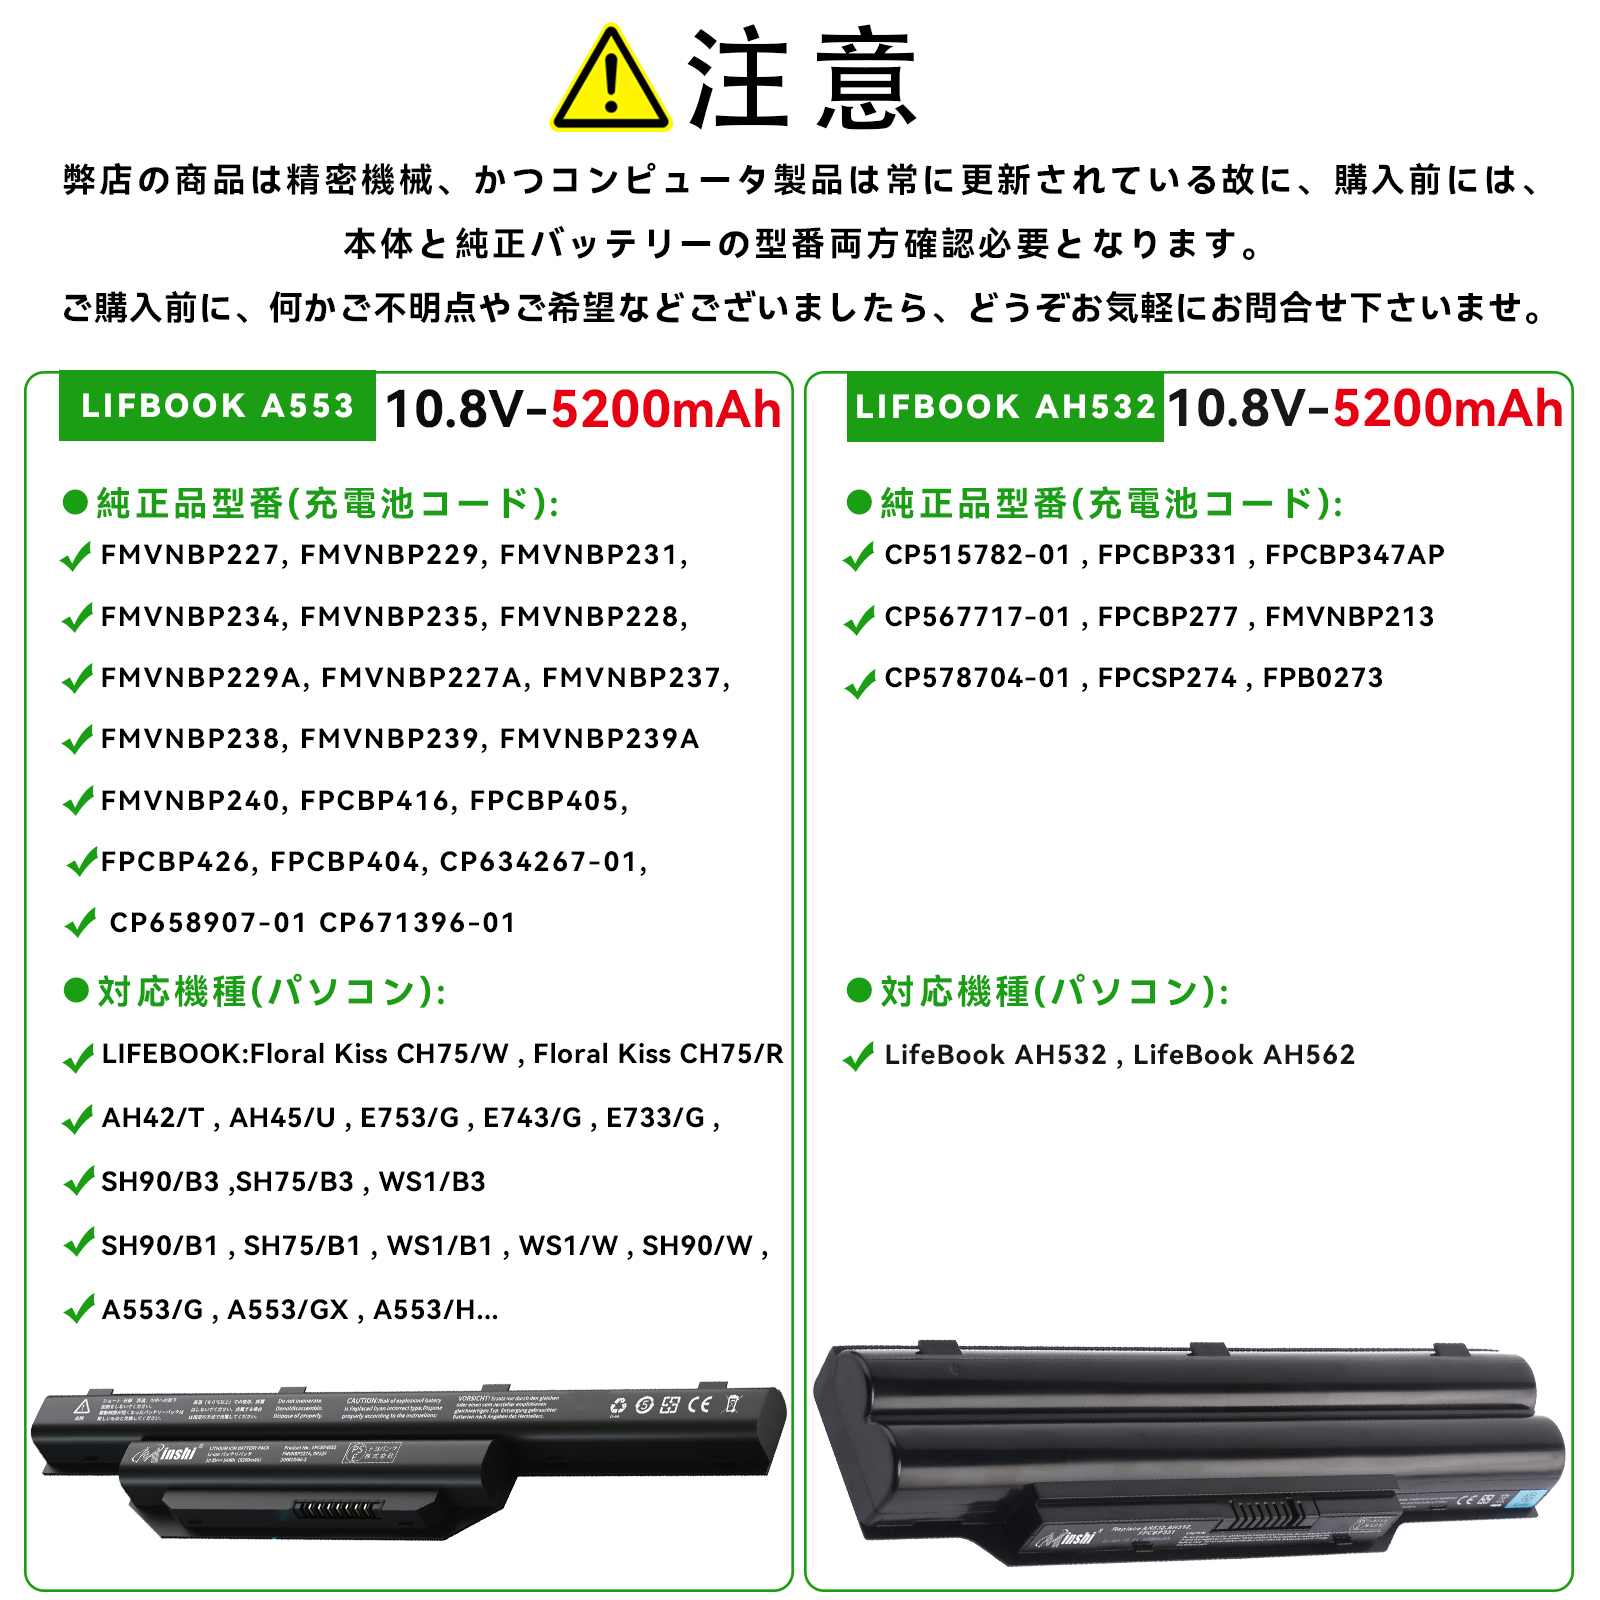 富士通 未使用 FUJITSU LIFEBOOK AH56 M、AH53 M、AH42 Mシリーズ 互換用内蔵バッテリパック FMVNBP229  FMVNBP229A FMVNBP227 minshi